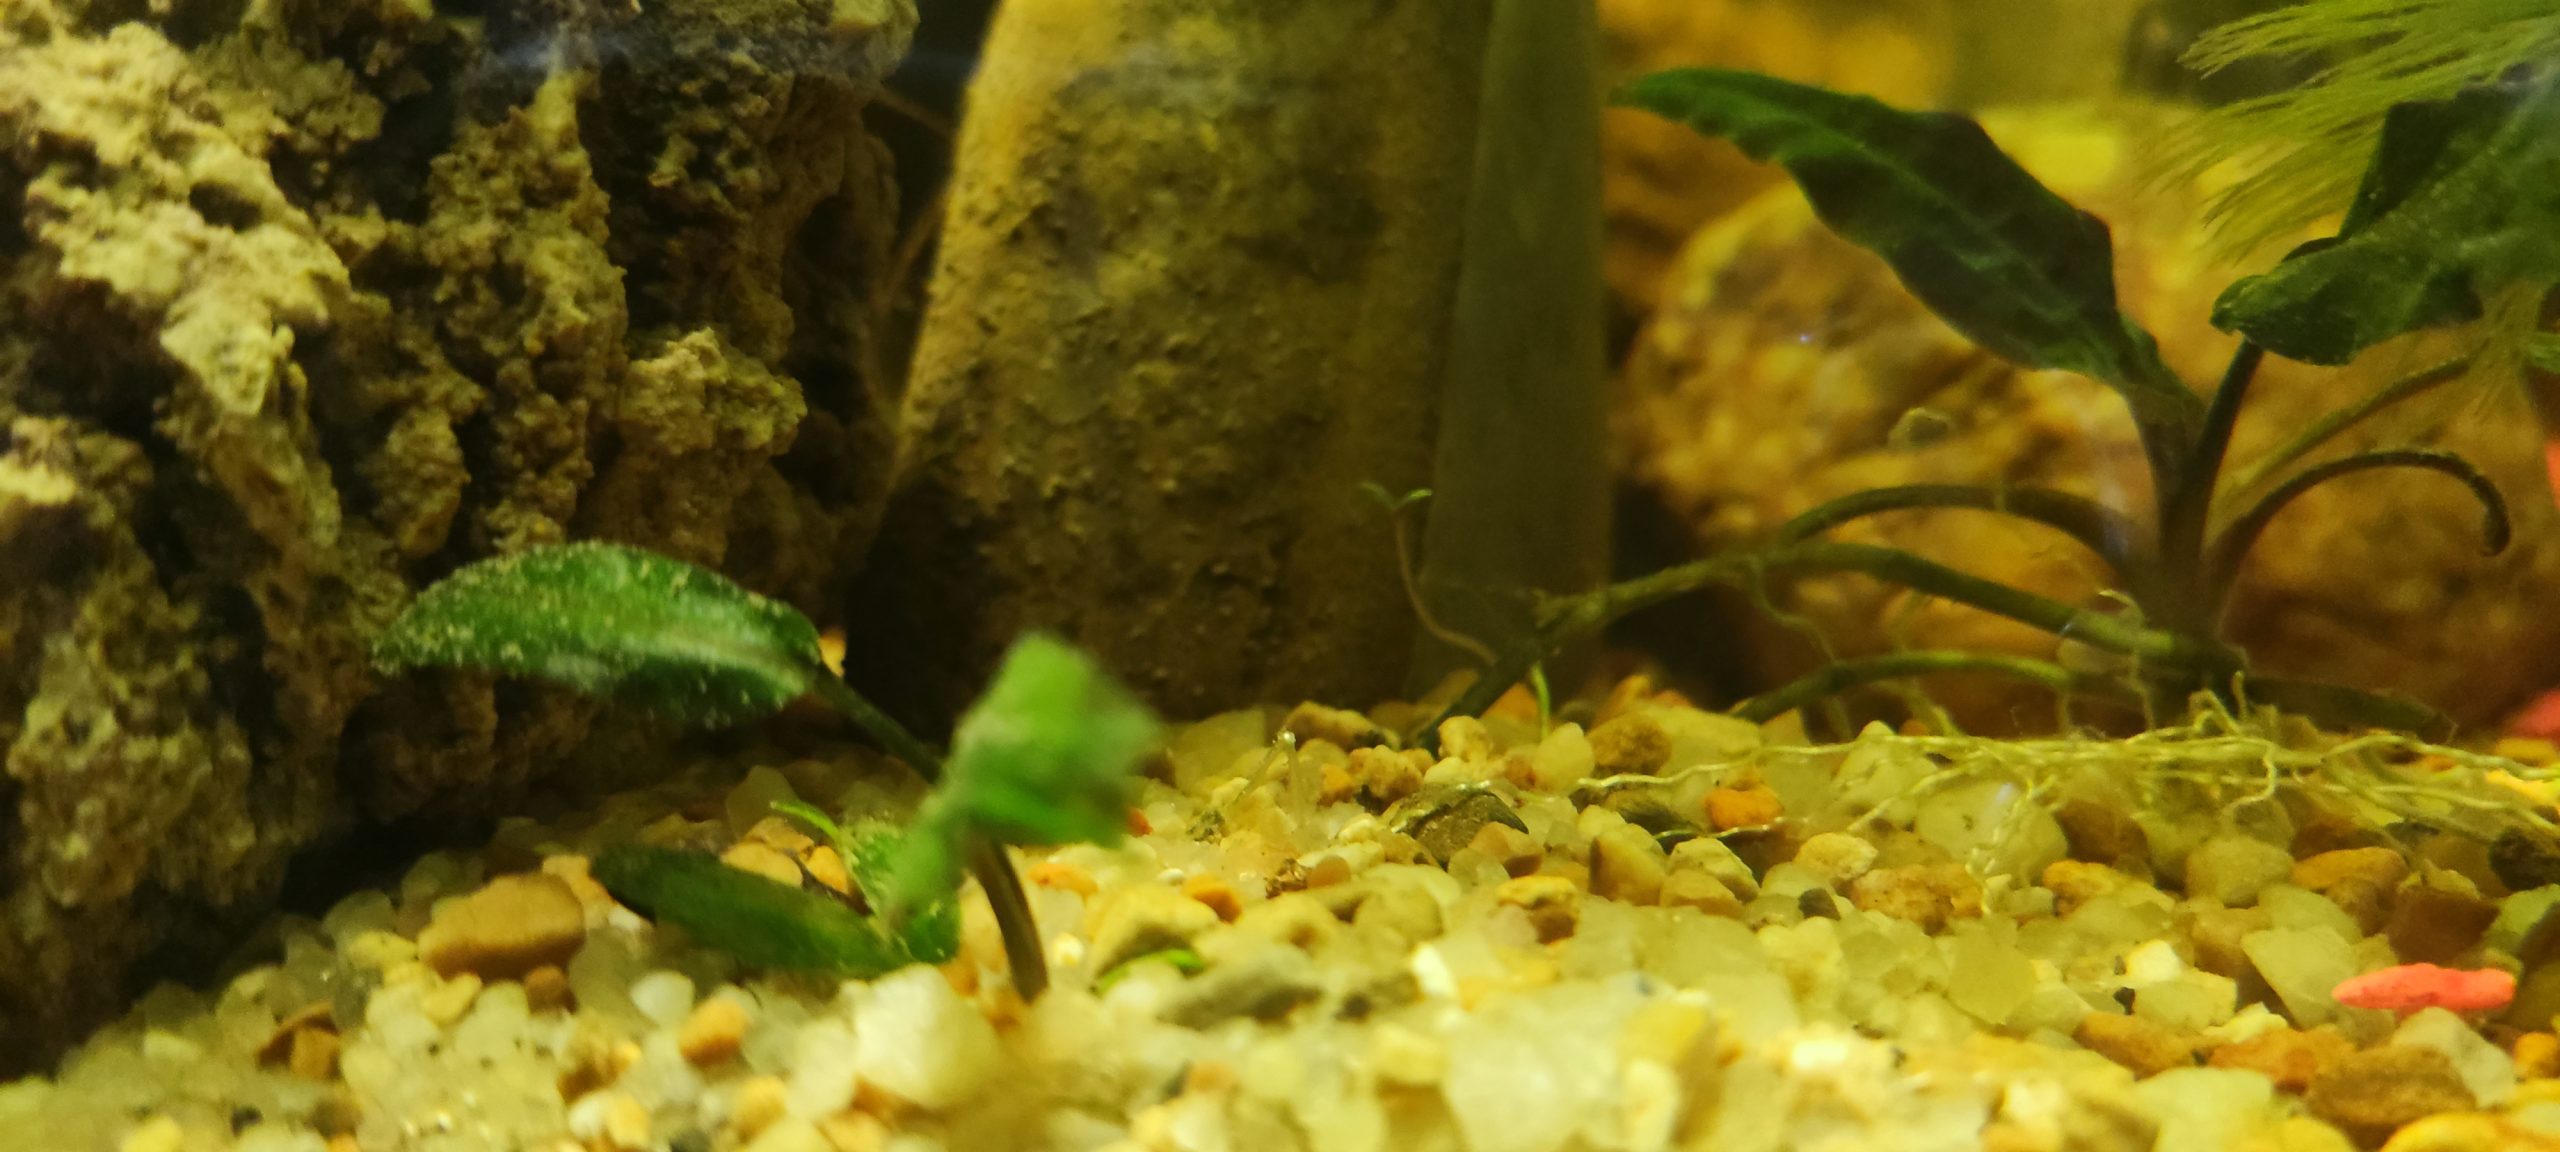 12 Benefits of Live Plants in an Aquarium (Pros and Cons)  Fish tank  plants, Freshwater aquarium plants, Betta aquarium